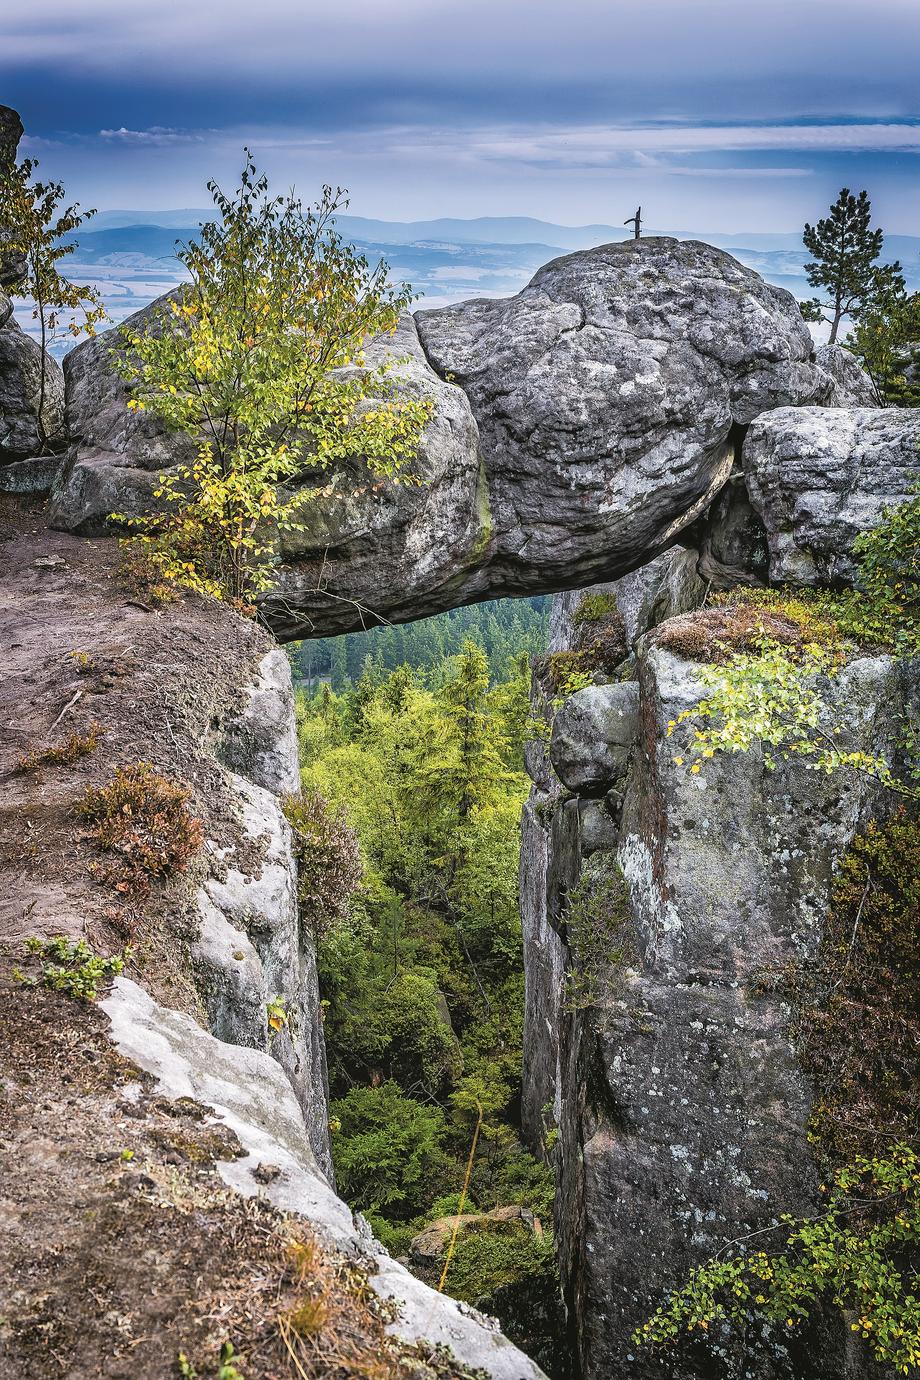 Góry Stołowe skrywają skalne labirynty, fantazyjne kamienne grzyby i zadziwiające formacje, m.in. Szczeliniec Wielki, wznoszący się na 919 m n.p.m.